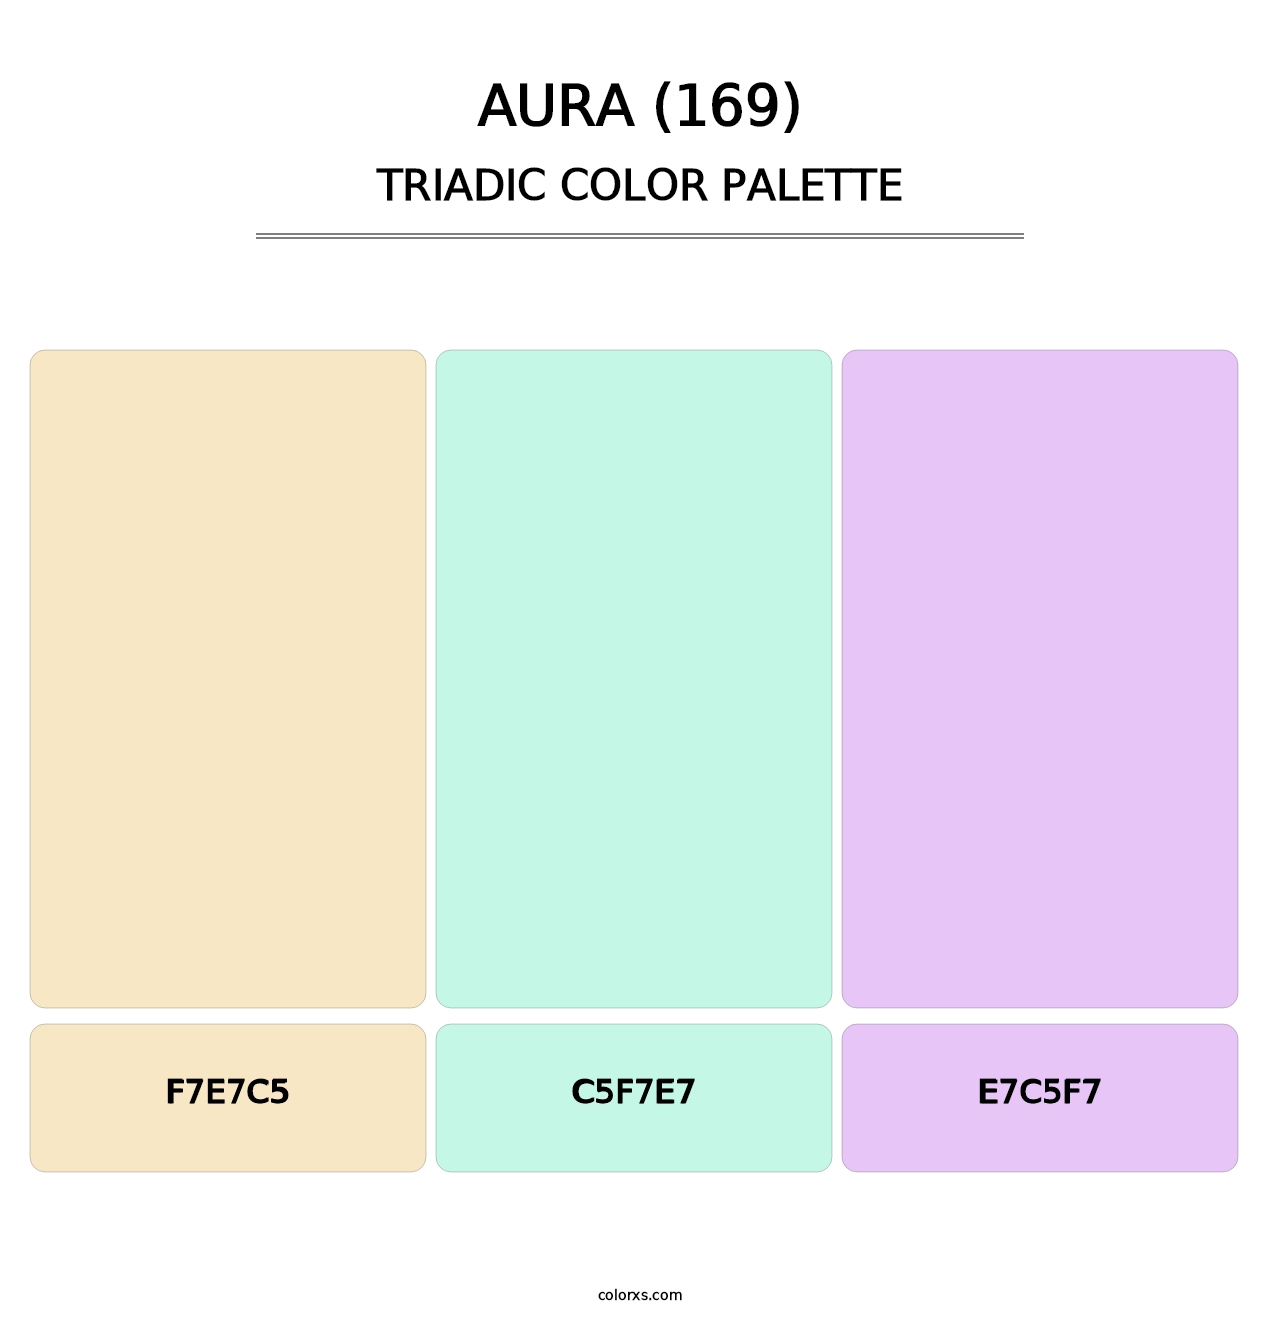 Aura (169) - Triadic Color Palette